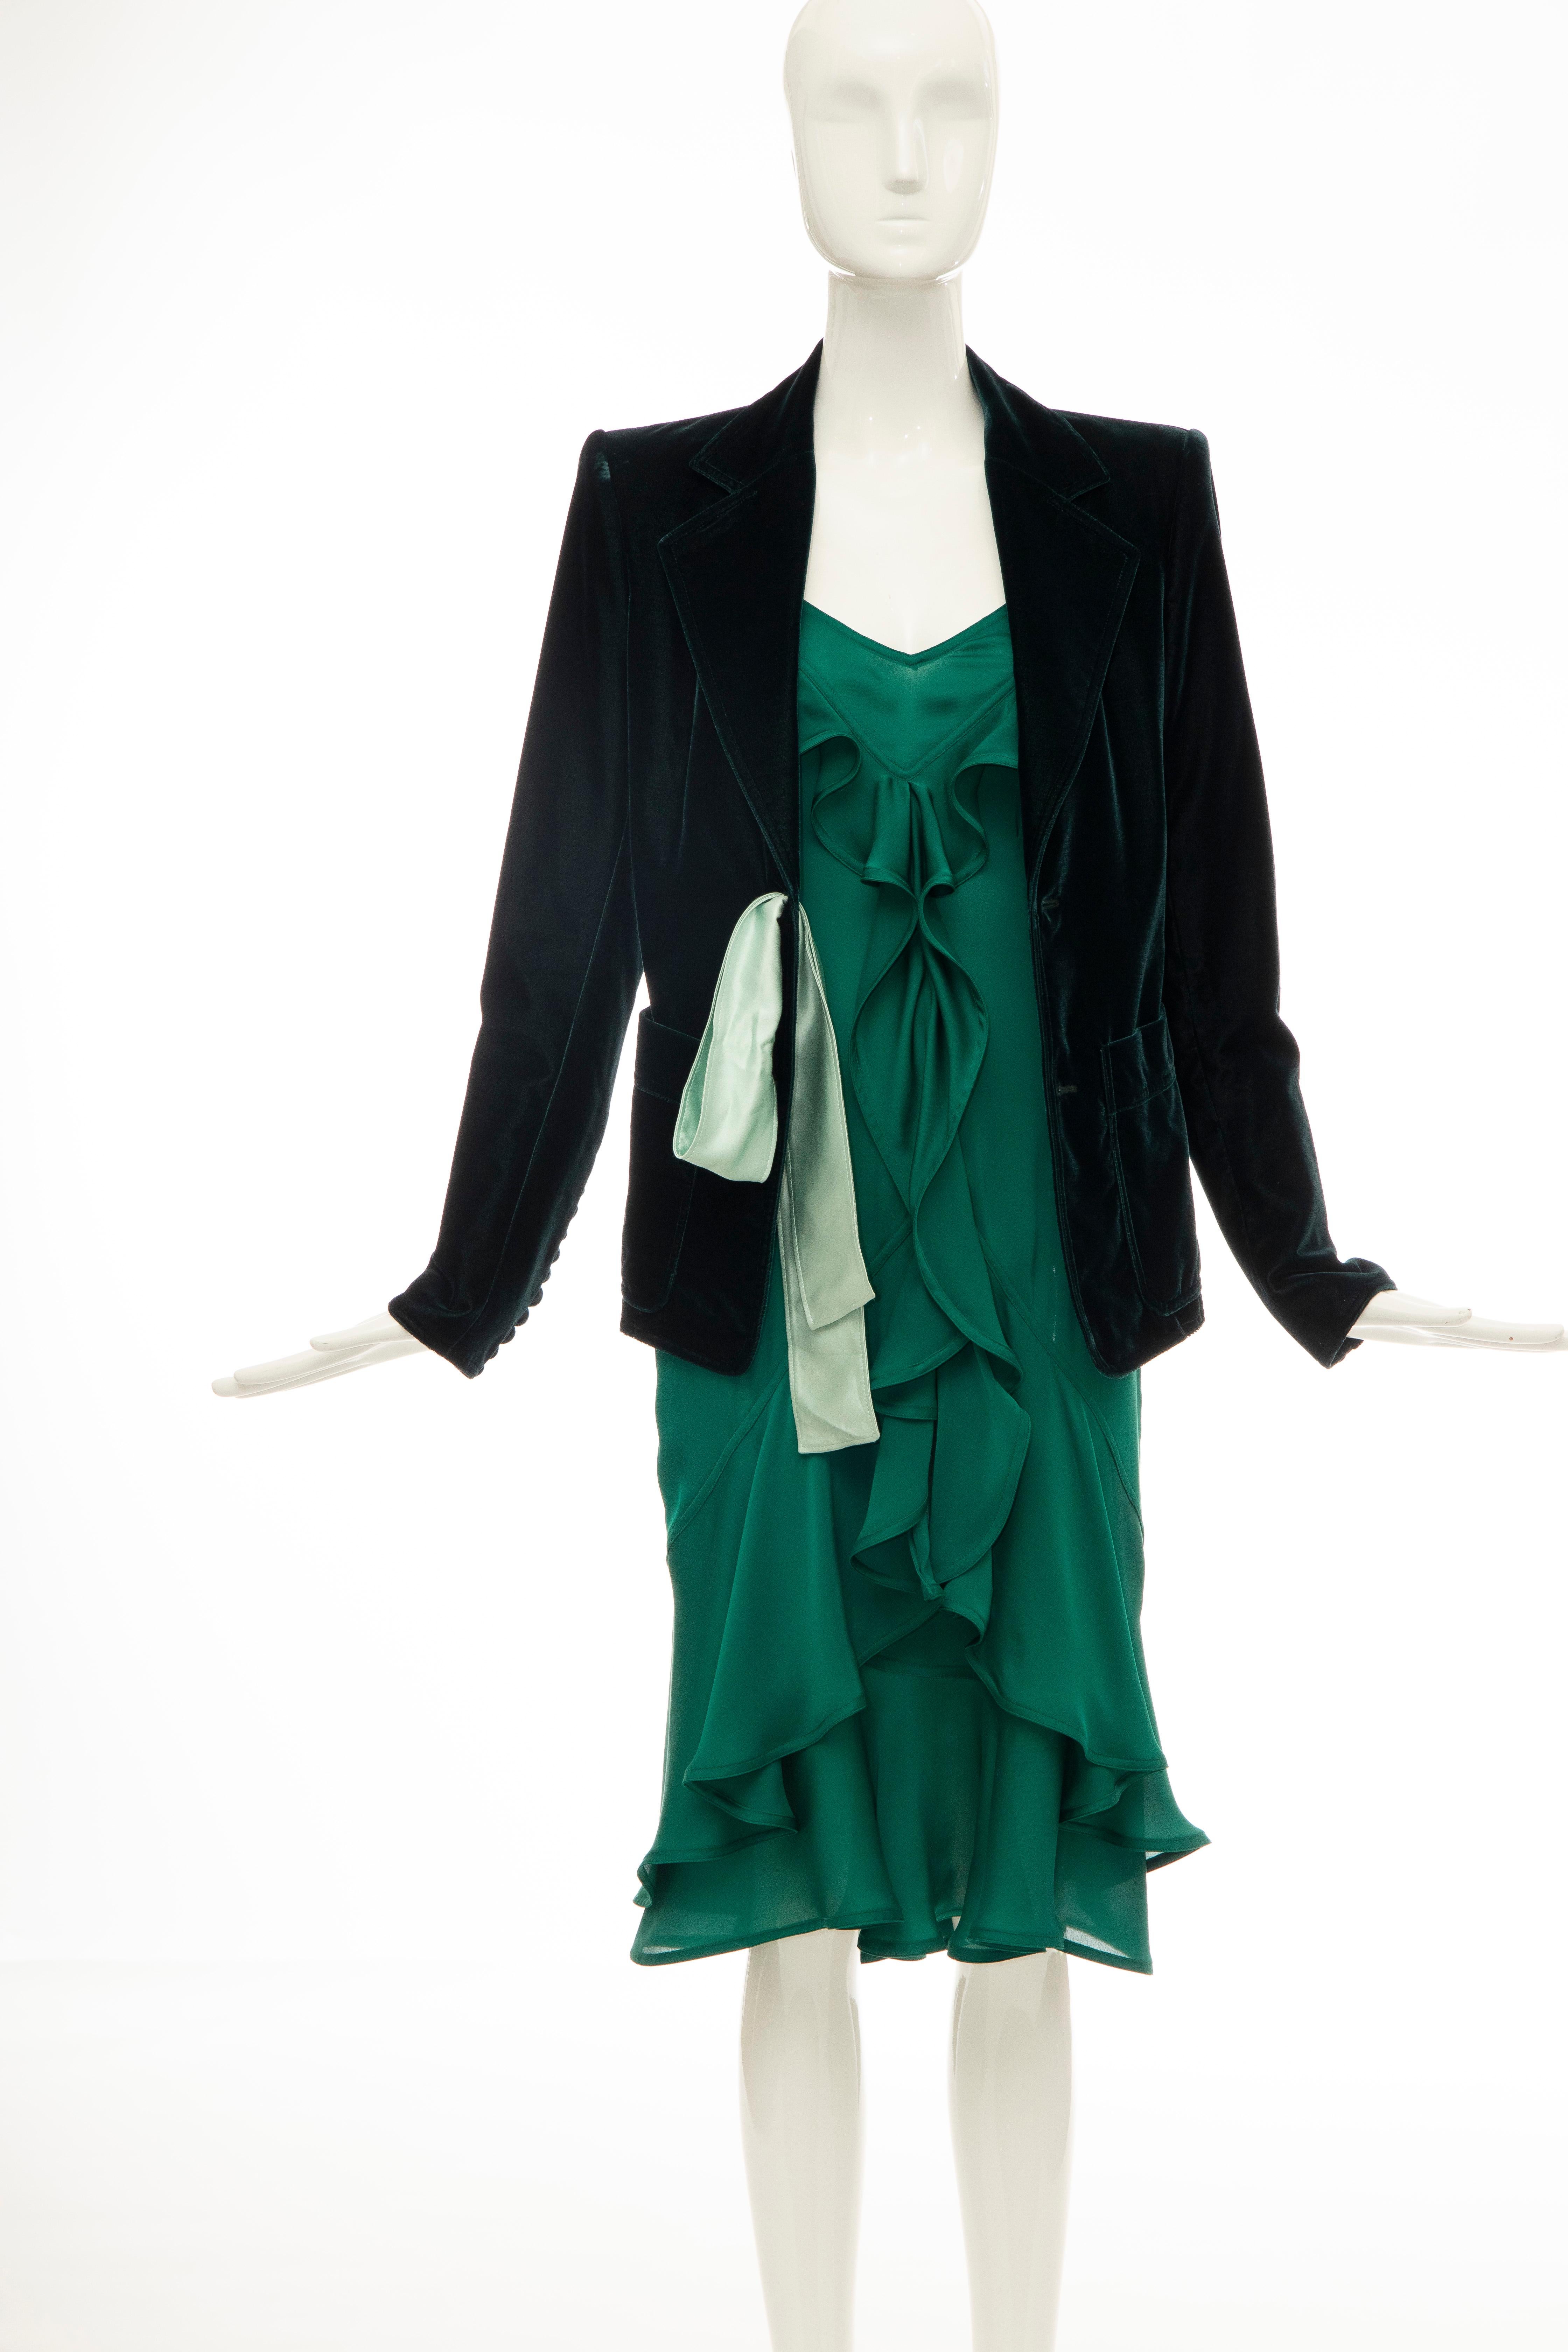 Tom Ford for Yves Saint Laurent Emerald Green Velvet Silk Dress Suit,  Fall 2003 5